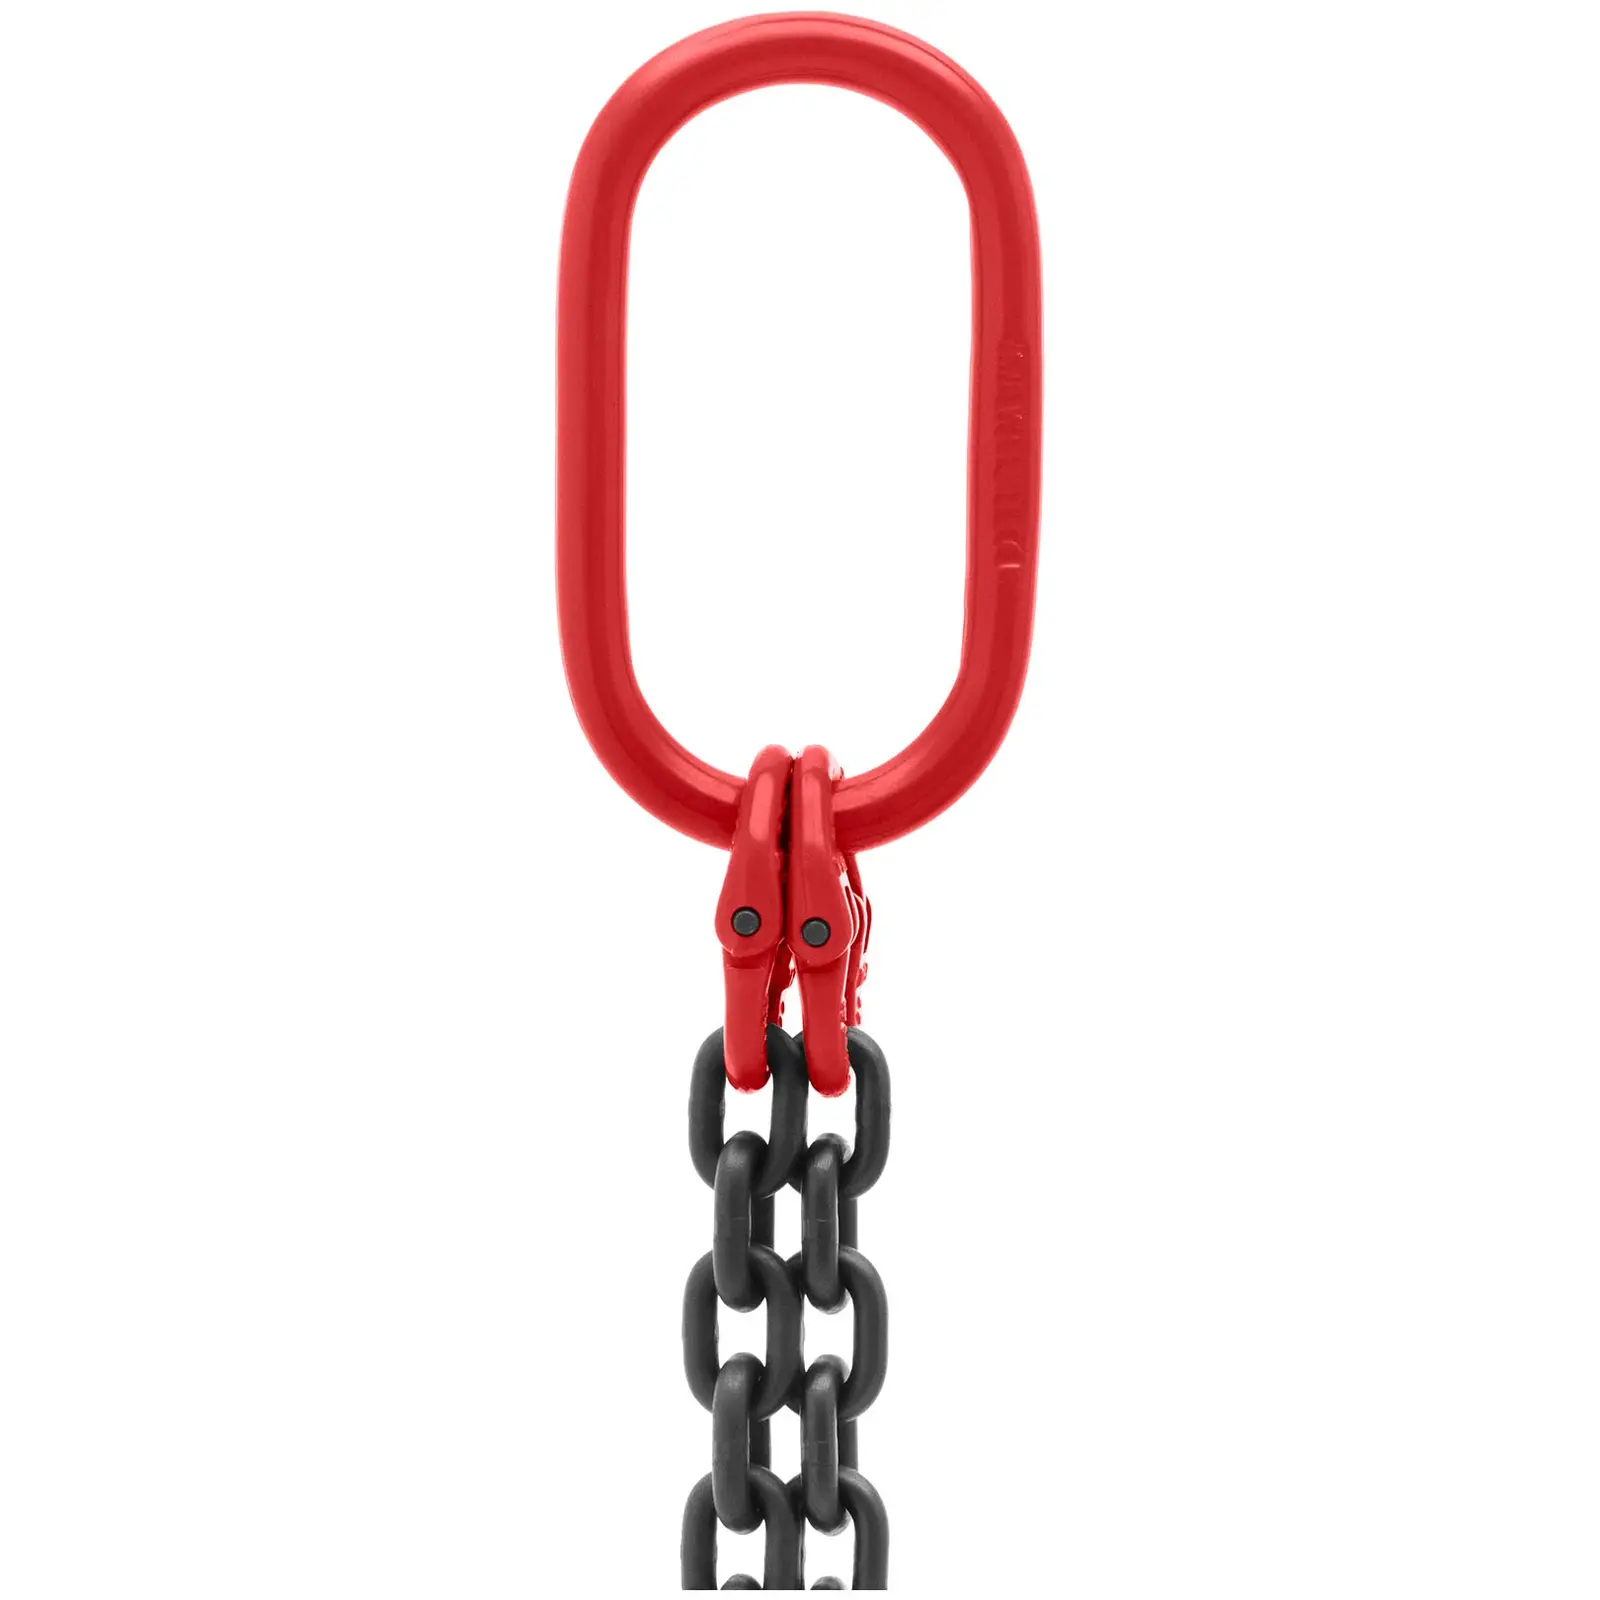 Imbracatura a catena - 2.800 kg - 2 x 2 m - Nera, rossa